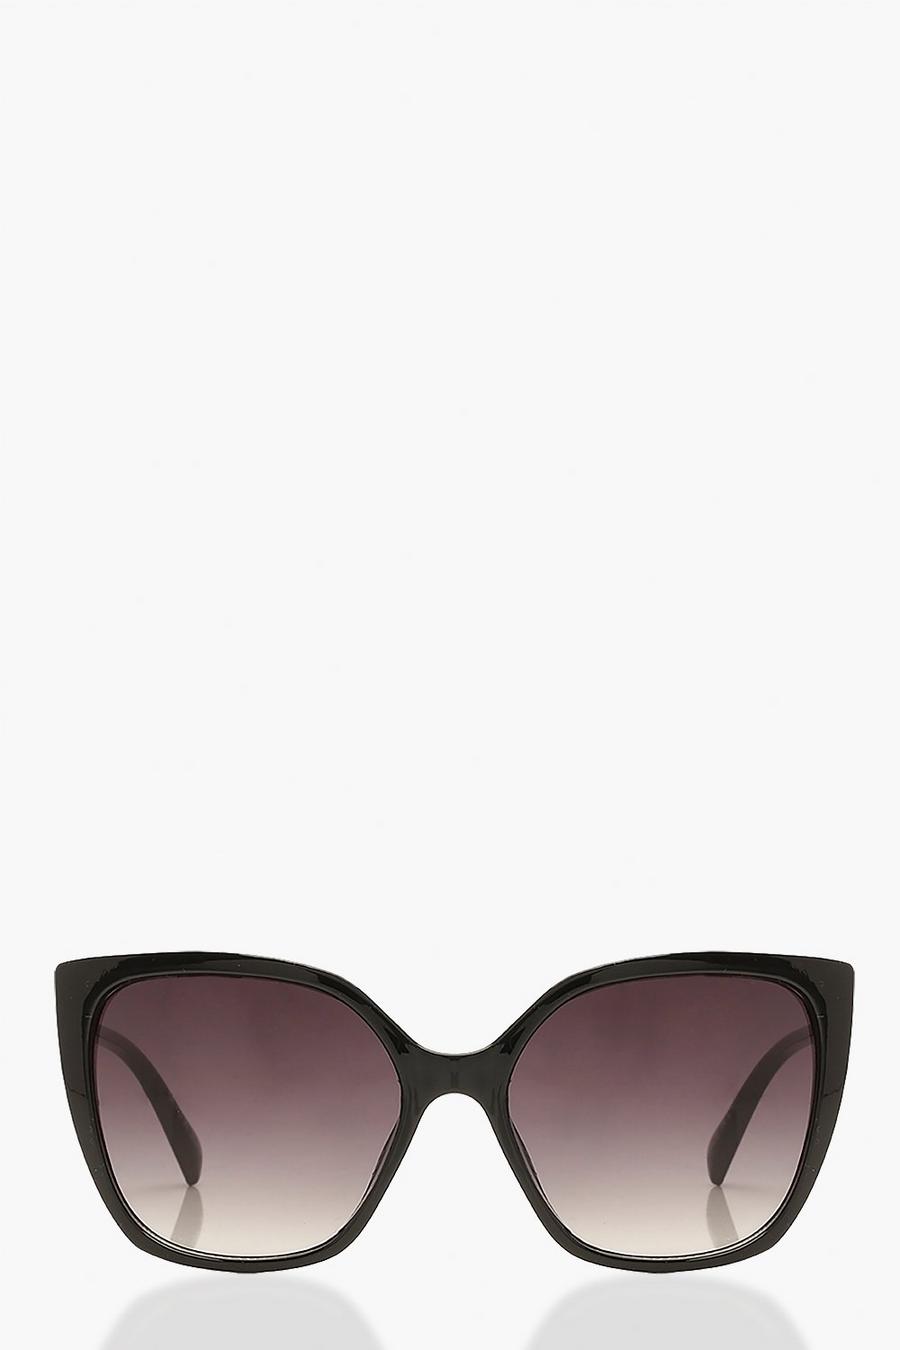 שחור משקפי שמש עיני חתול אוברסייז עם עדשות גרדיאנט image number 1